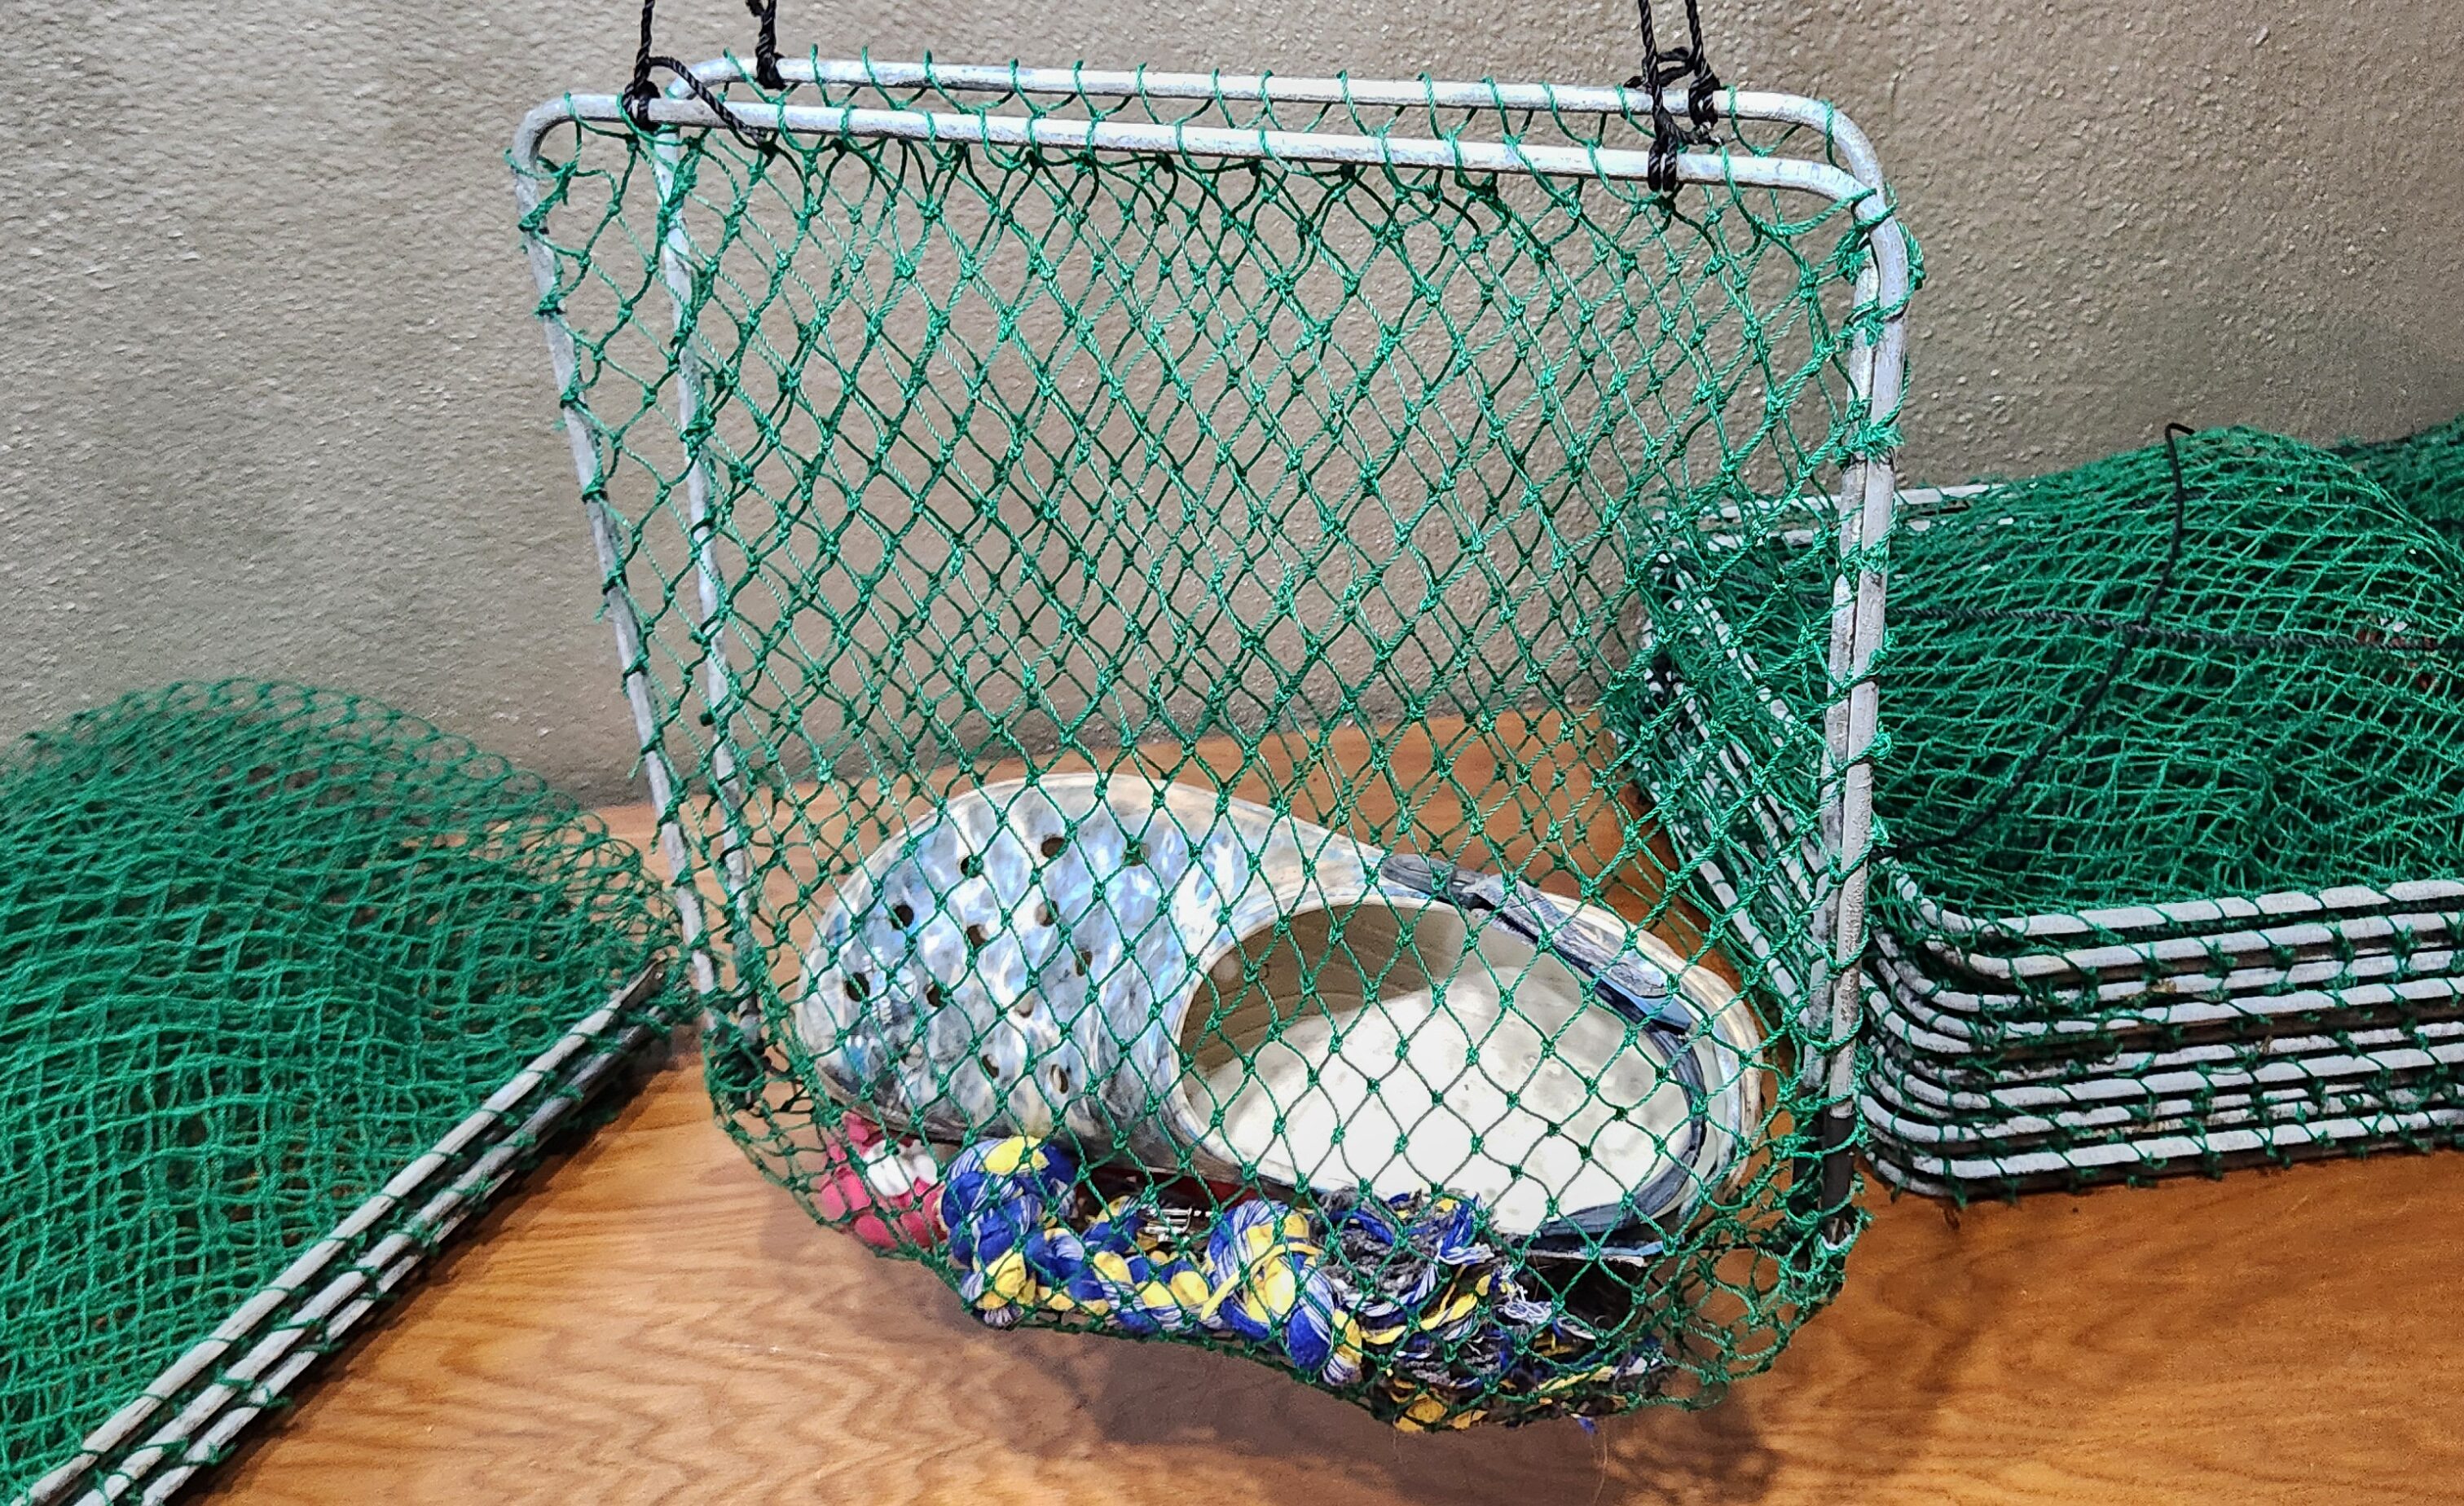 Got’em crab nets